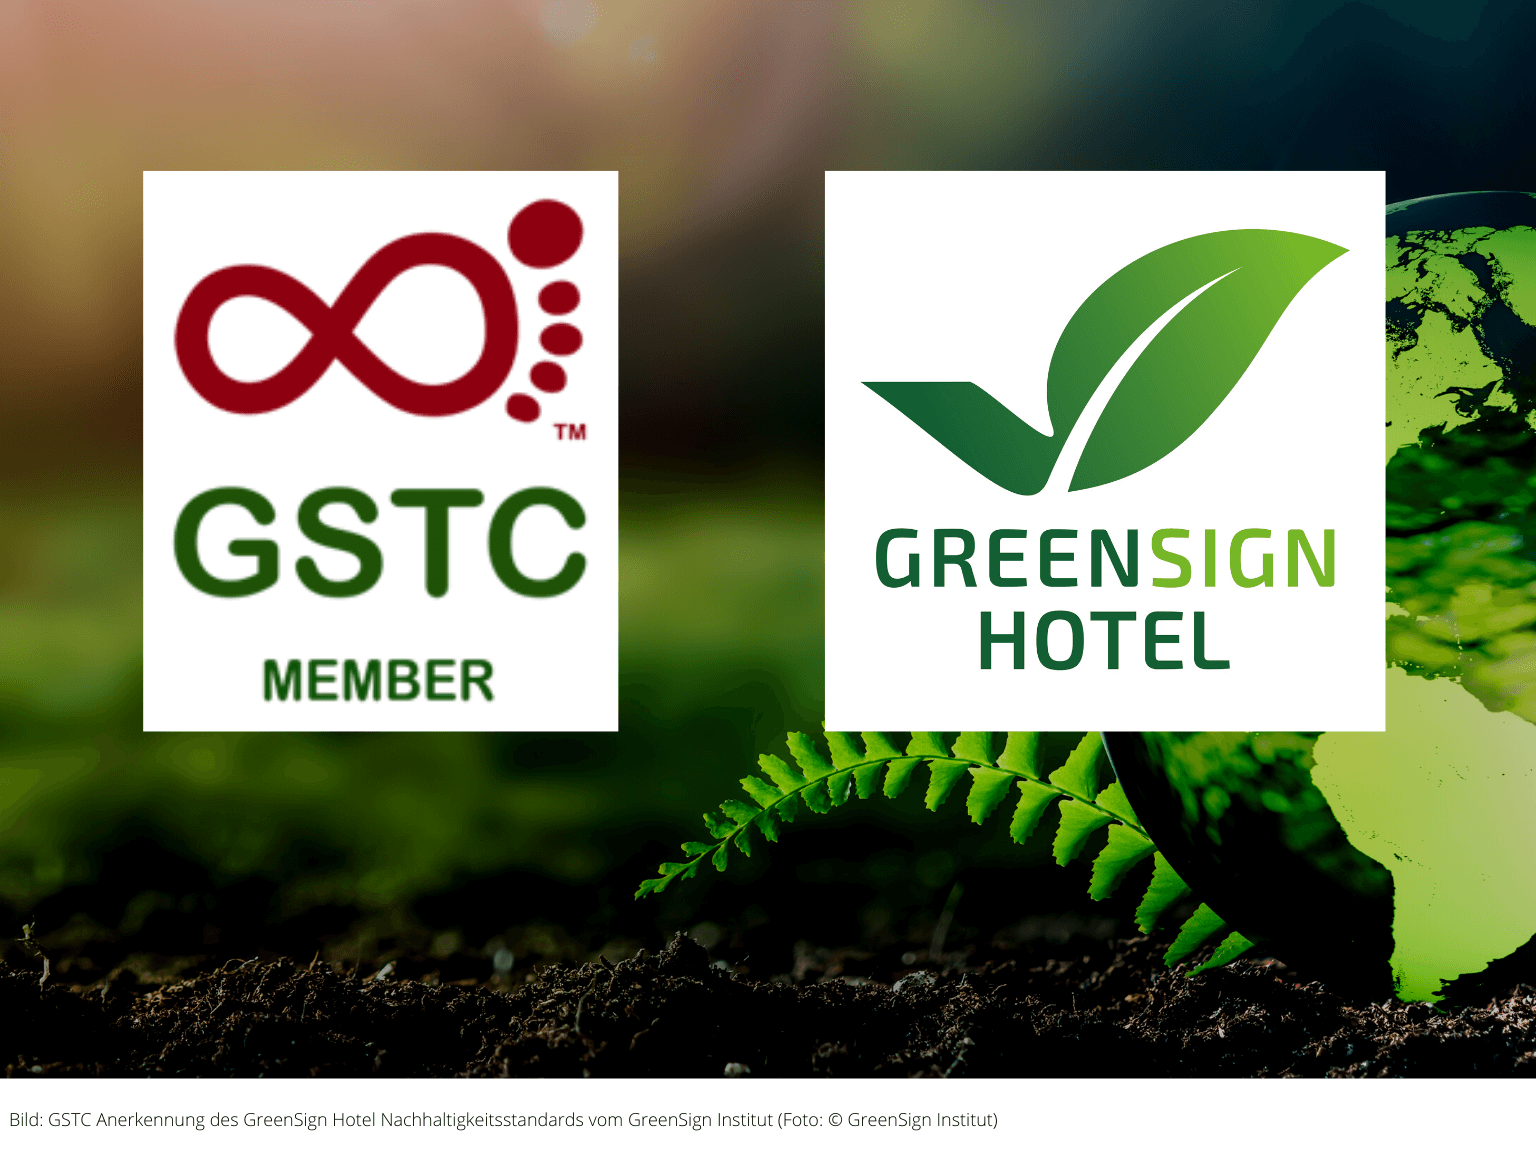 GreenSign Hotel Nachhaltigkeitsstandard vom Global Sustainable Tourism Council anerkannt